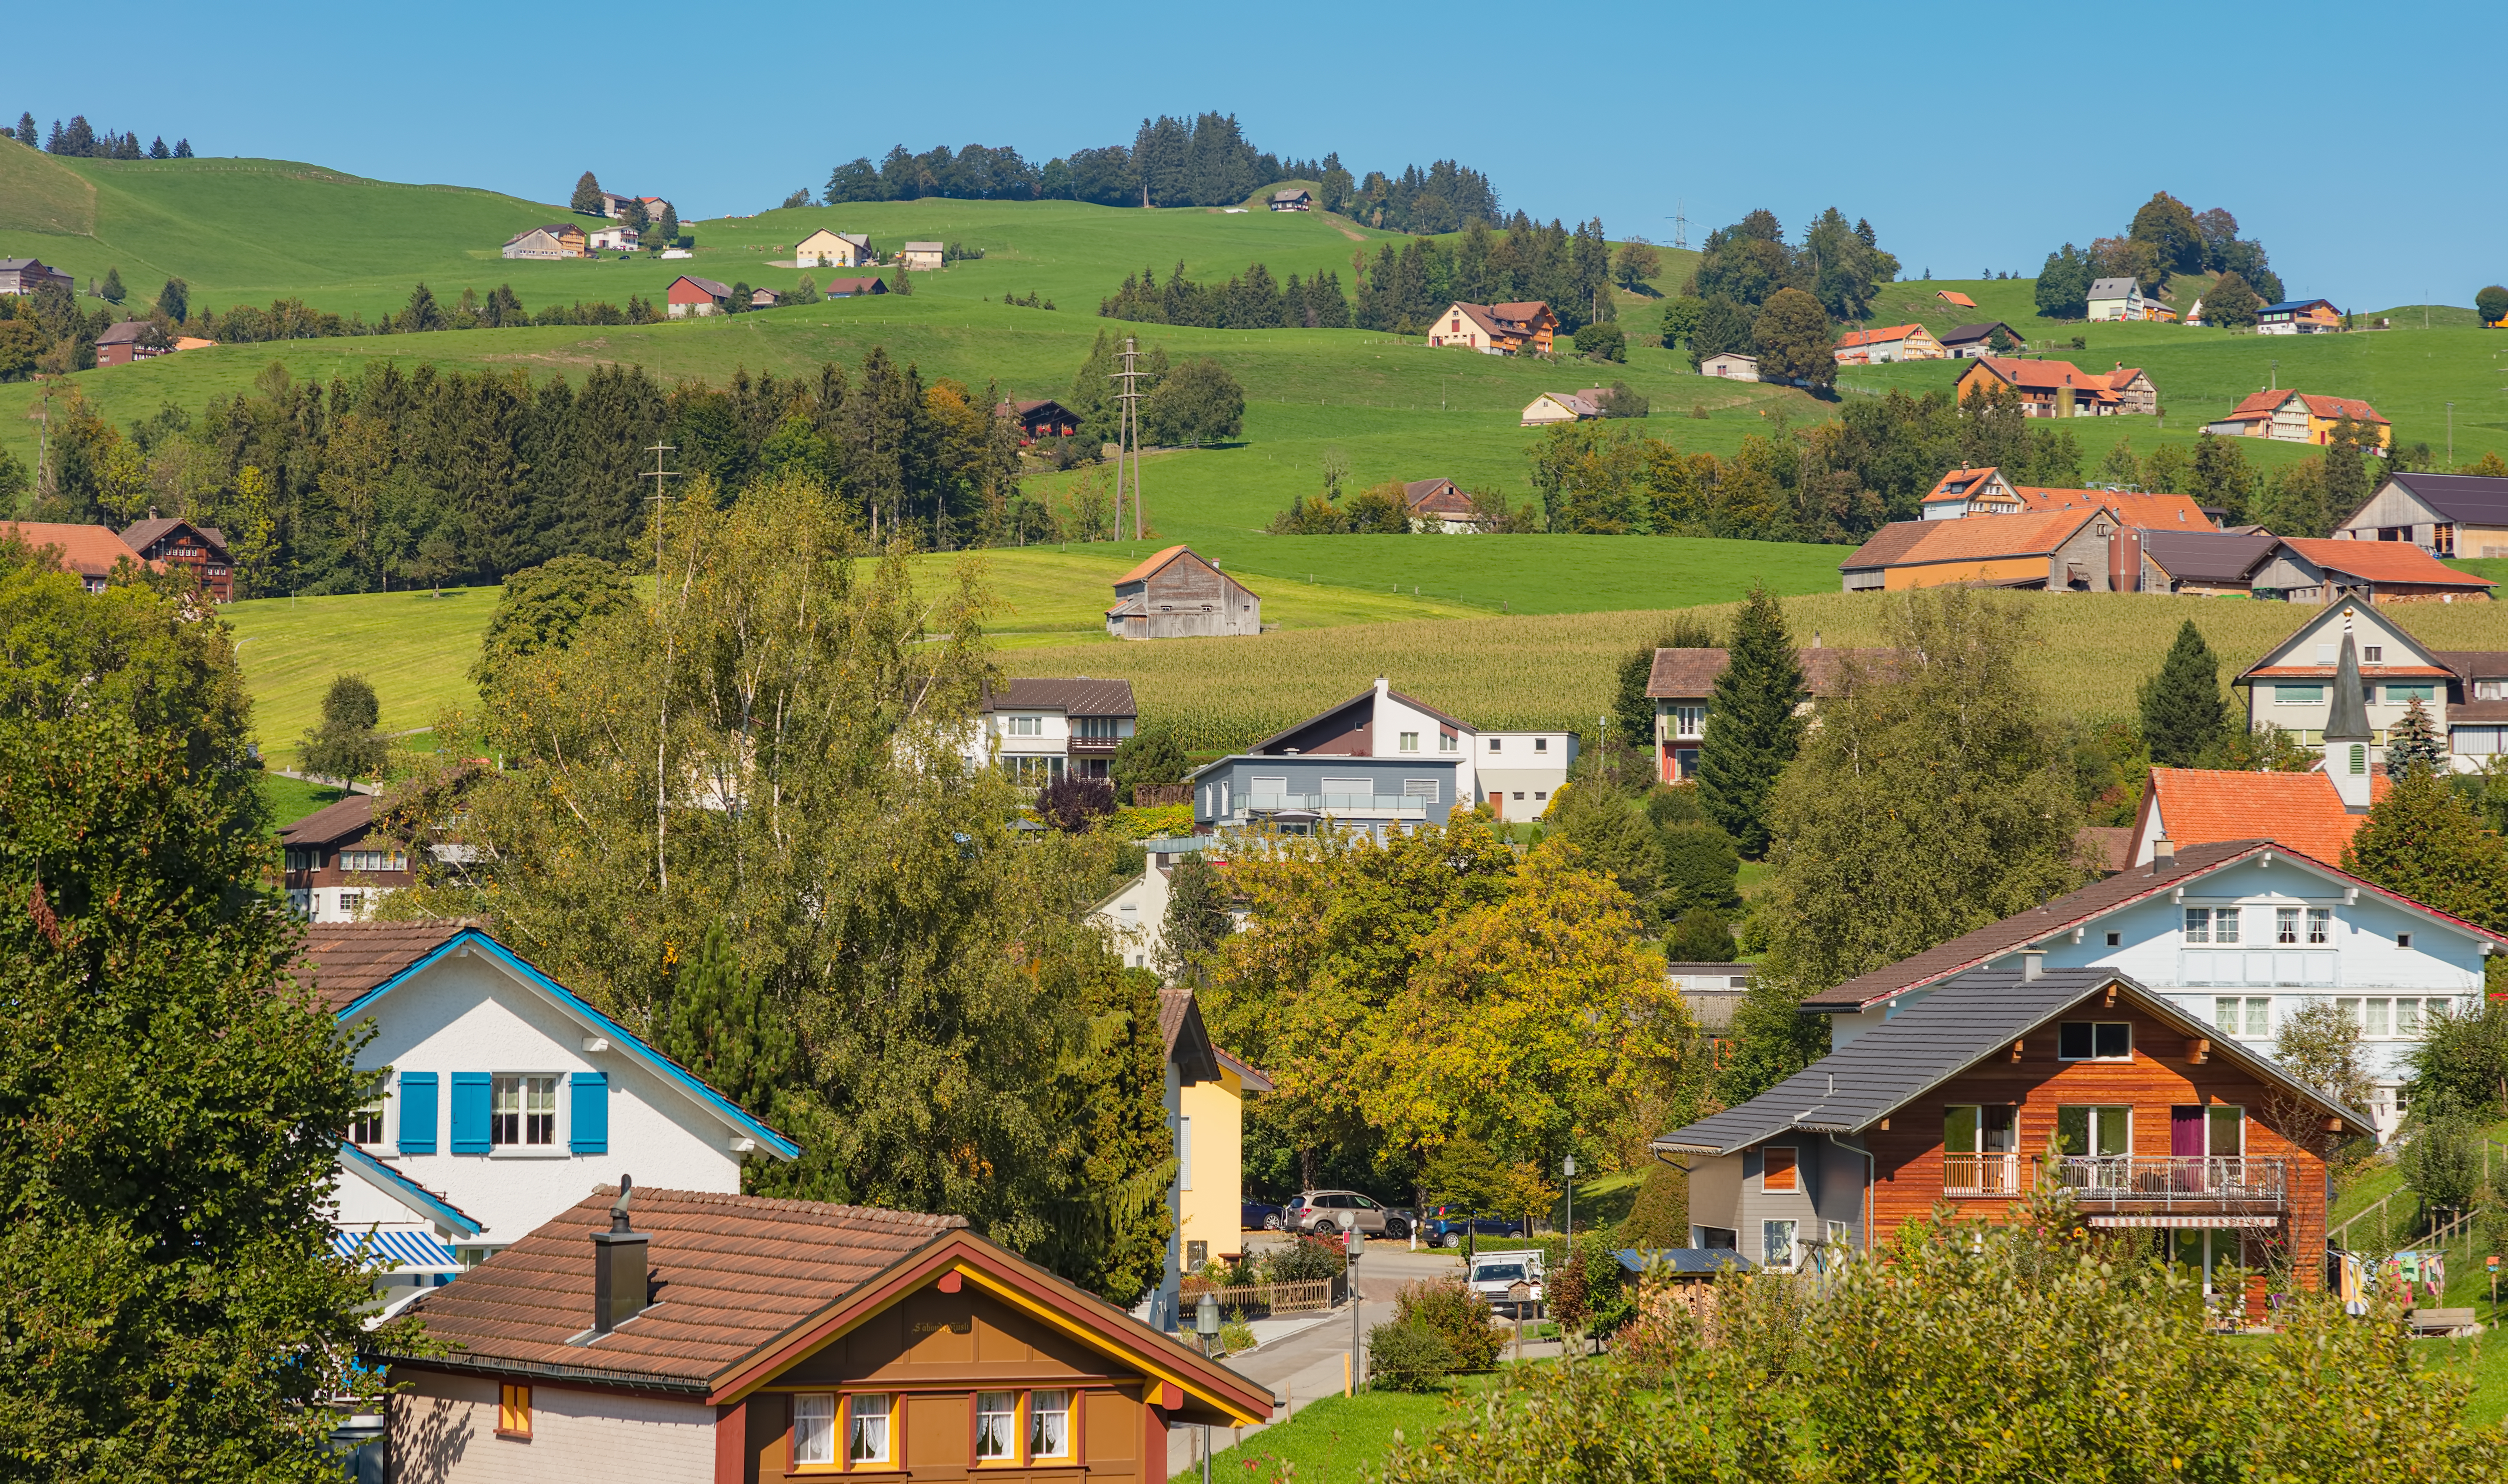 Wohneigentum in der Schweiz kaum mehr bezahlbar